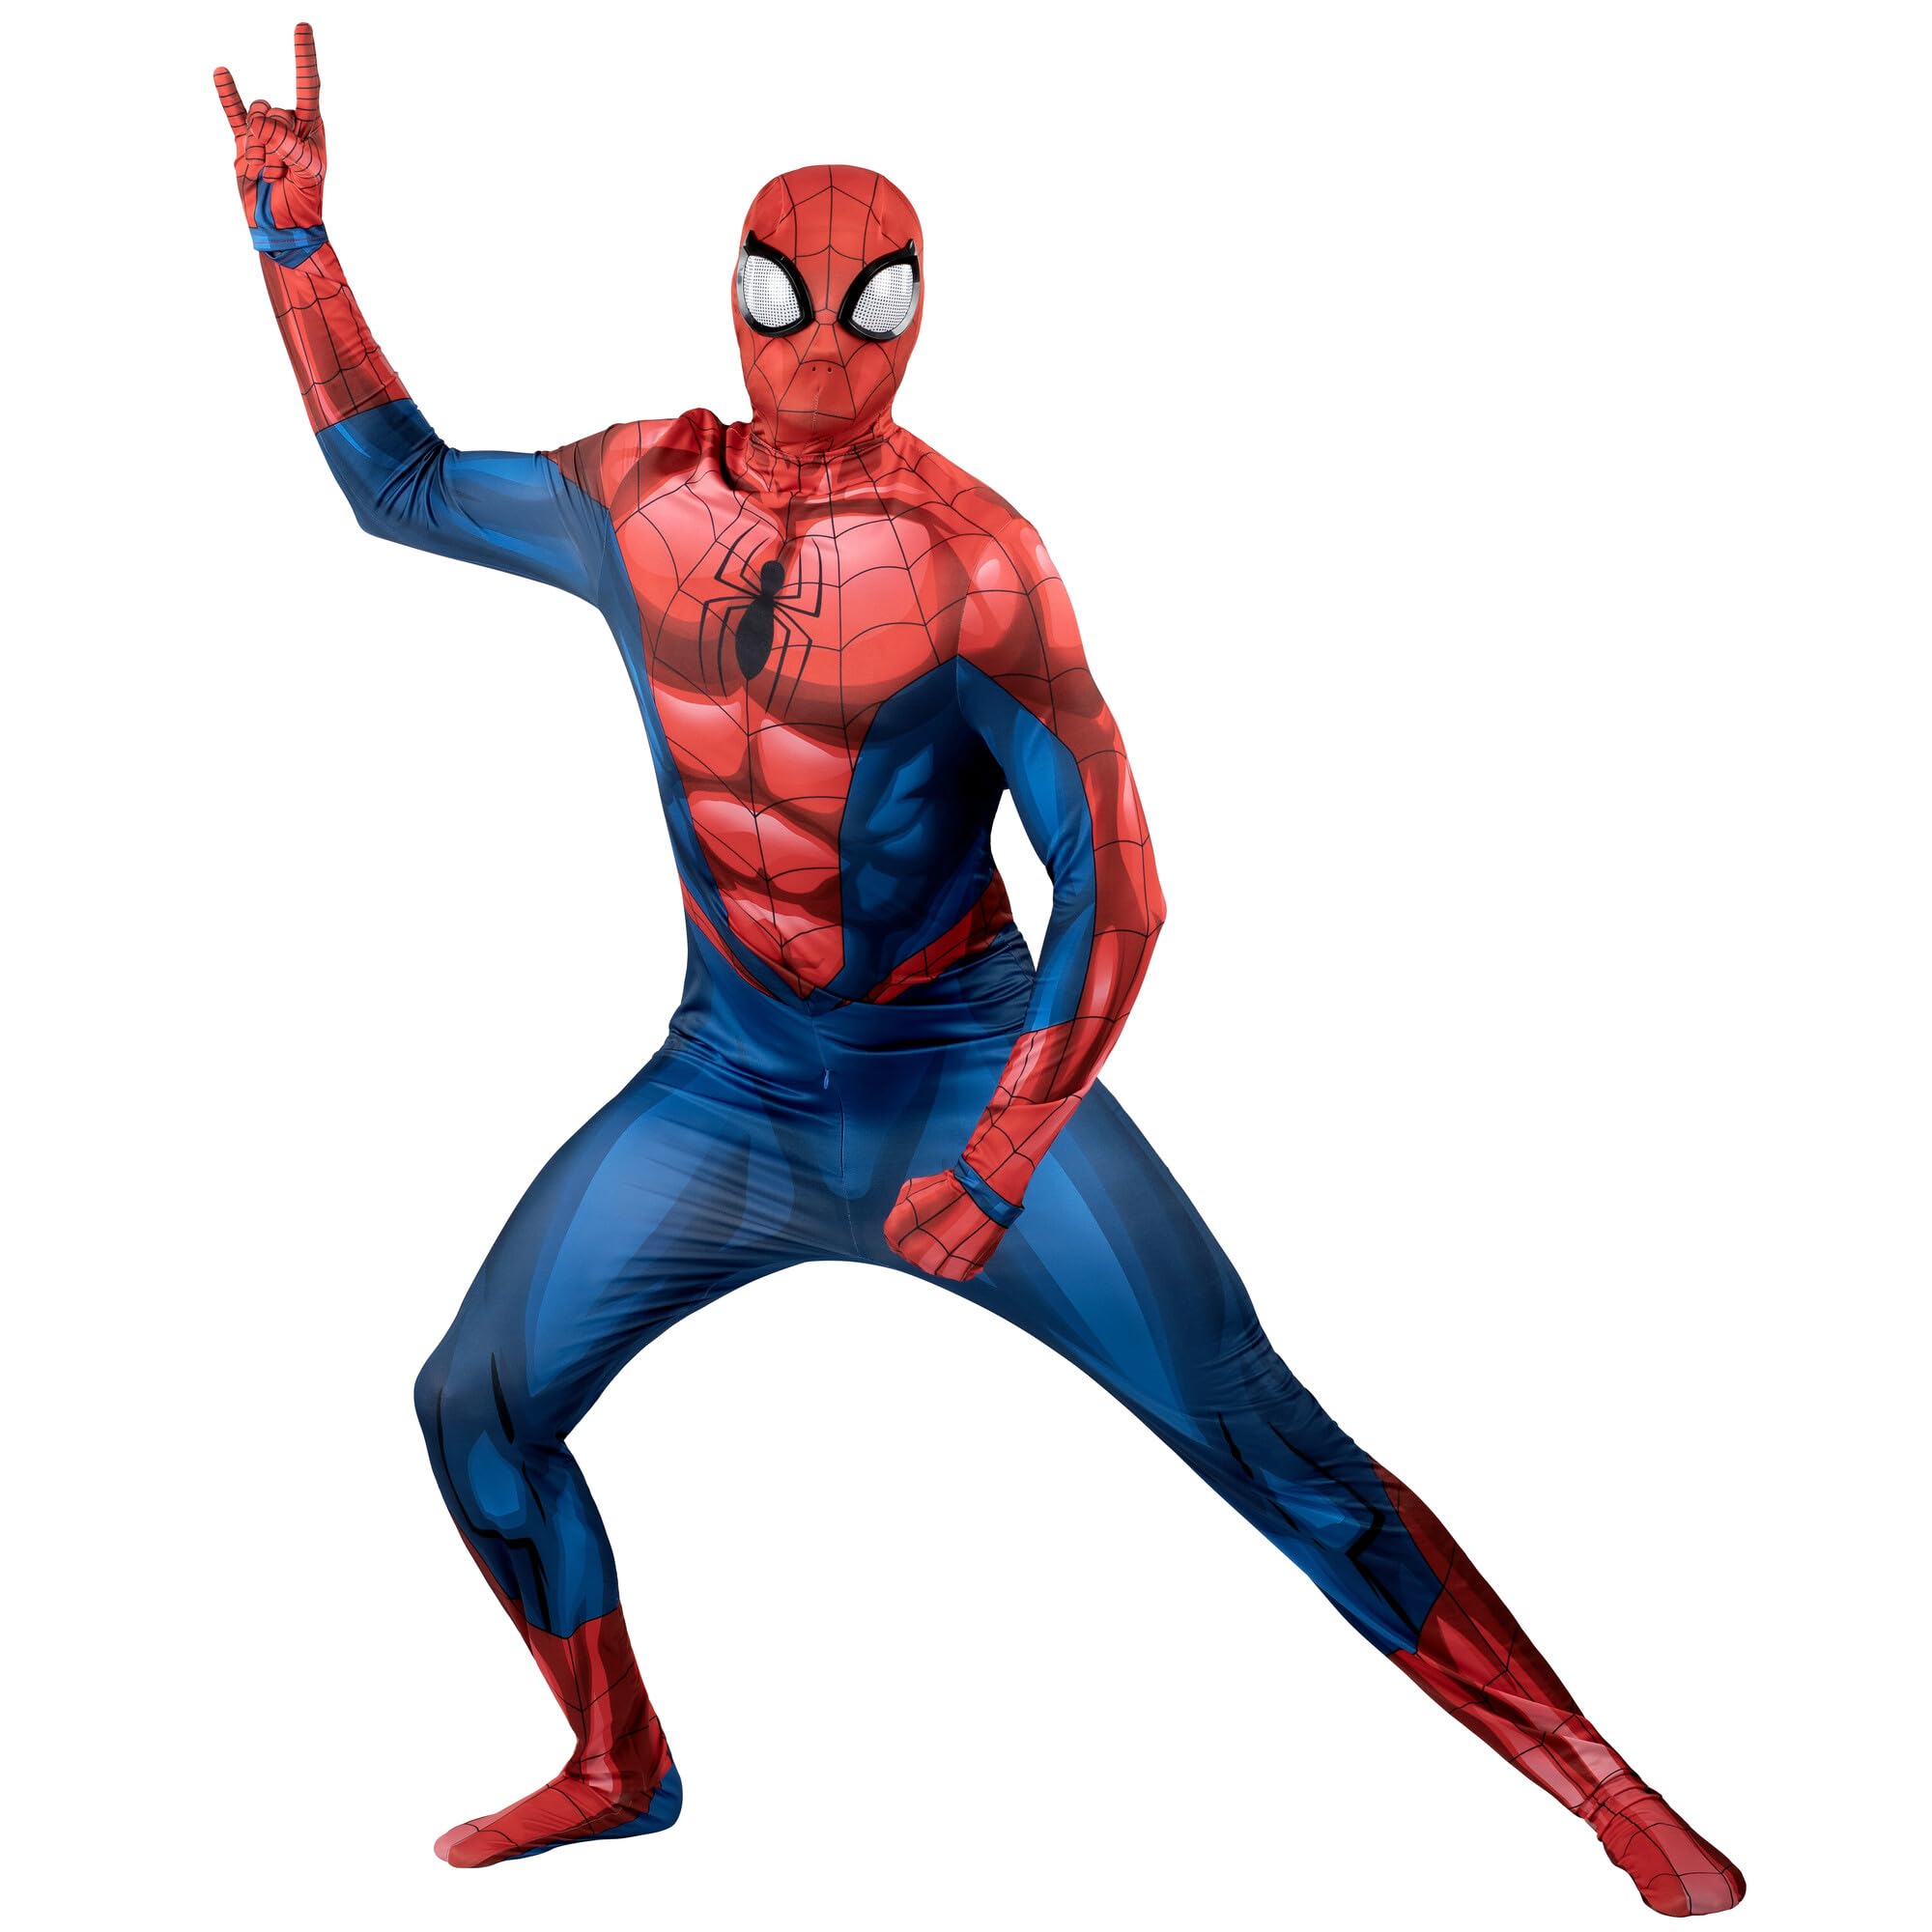 Marvel: Spider-Man Adult Deluxe Zentai Suit